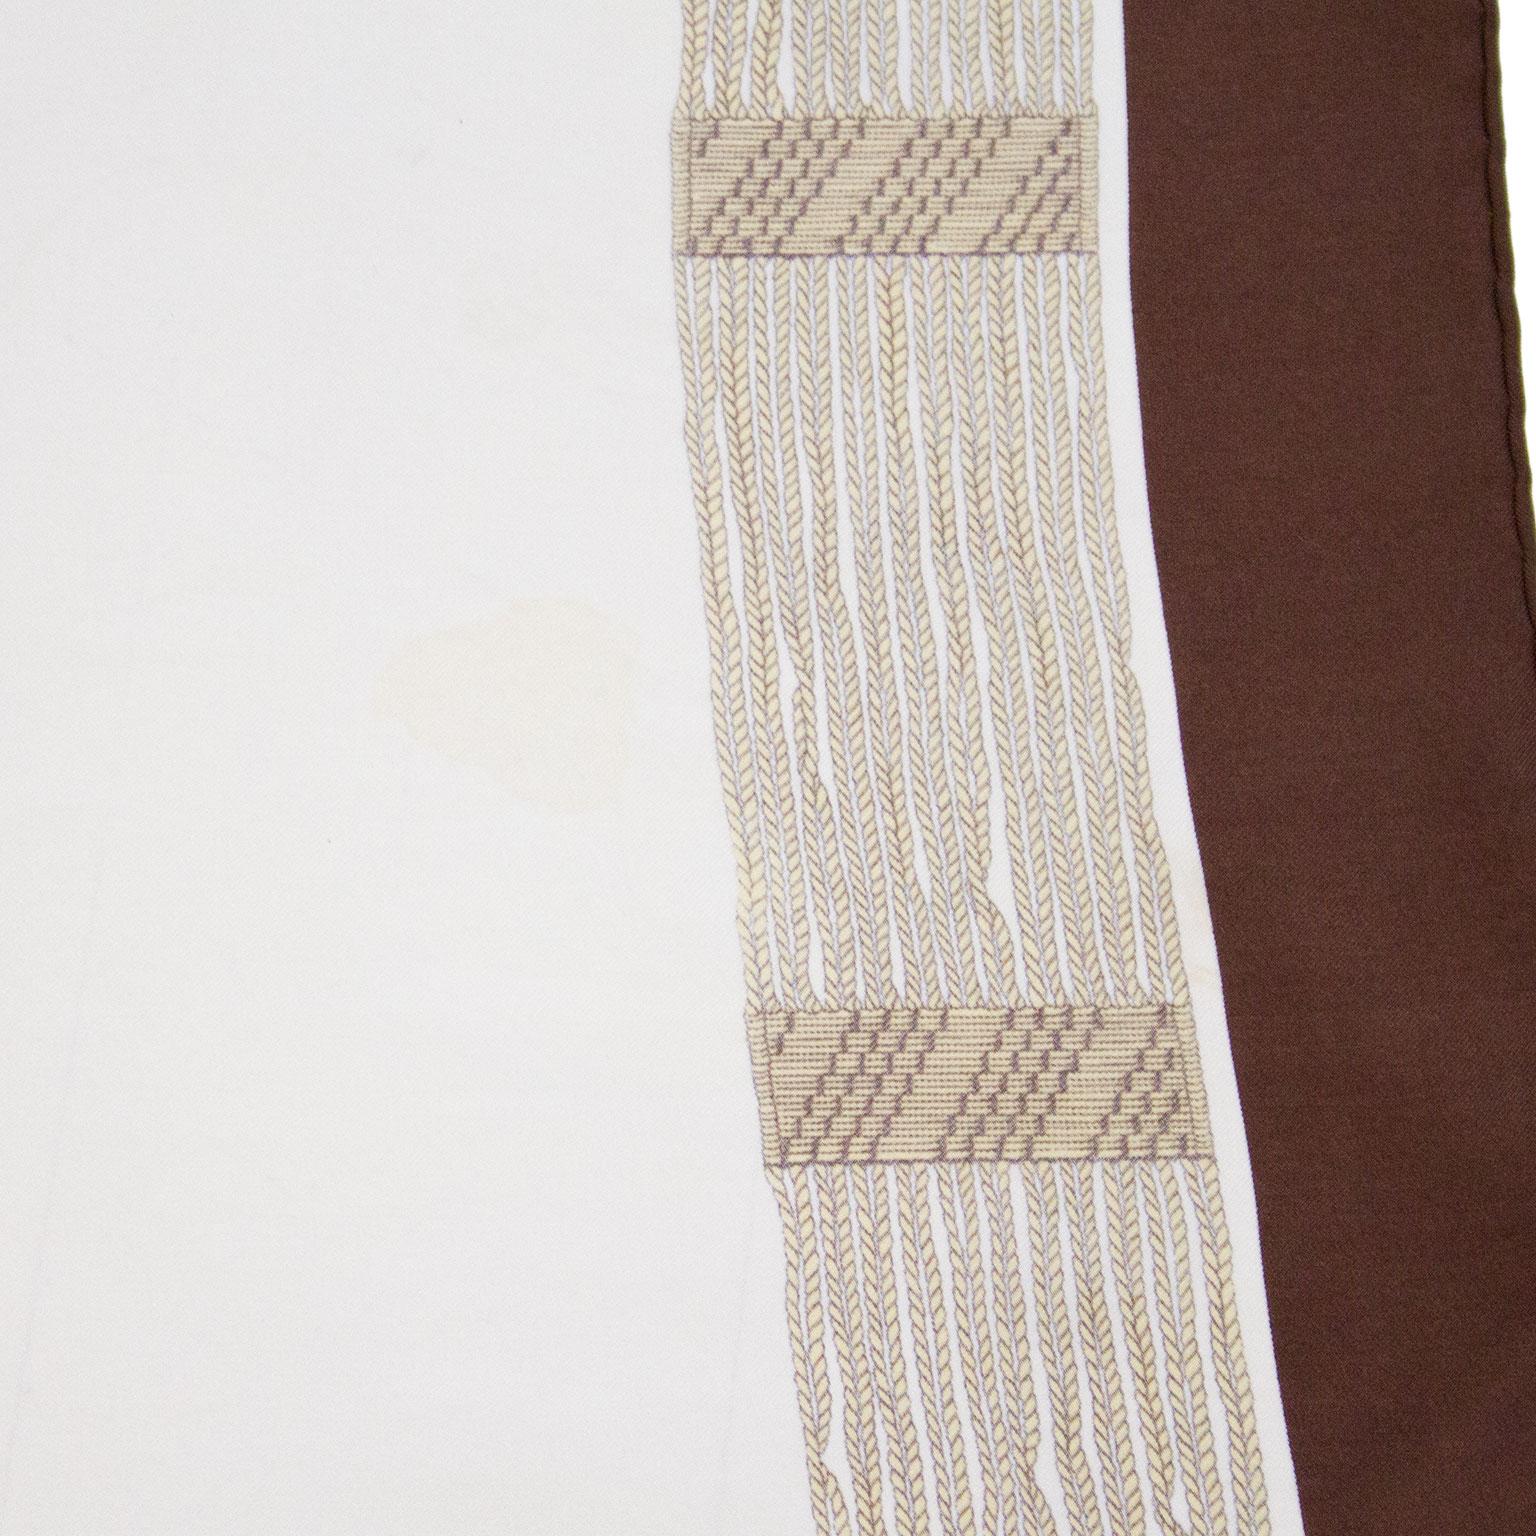 Gucci-Seidenschal aus den 1970er-Jahren mit Kettengürtel-Design. Signiert Gucci in der unteren Ecke. Das Design ist auf einem beigen Hintergrund mit dunkelbrauner Umrandung. Leichte Verfärbungen und ein kleiner Fleck über einem der